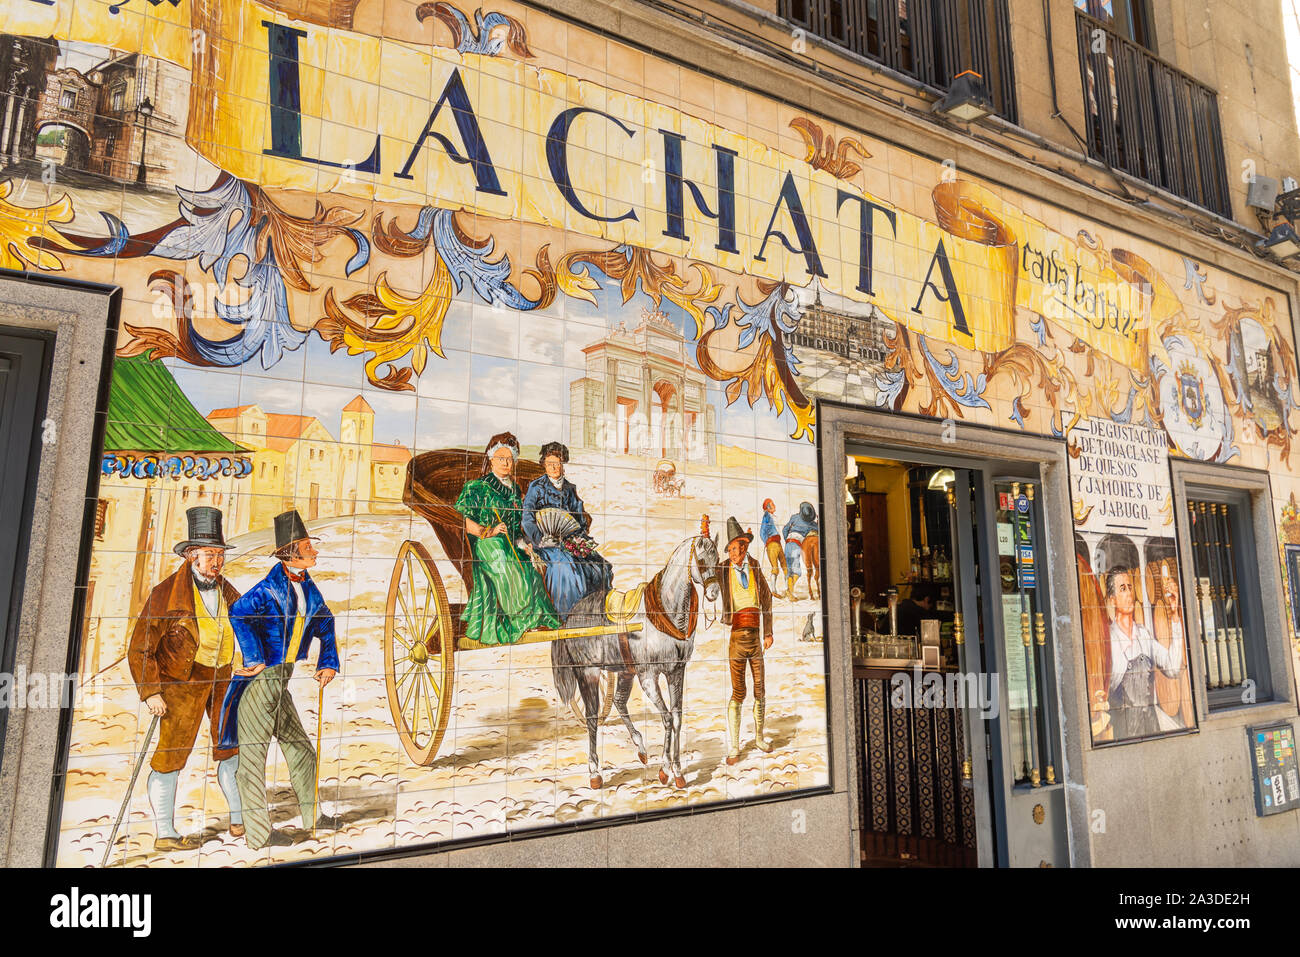 Dekofliesen außerhalb bar La Chata in der Calle Cava Baja im Viertel La Latina, Madrid, Spanien Stockfoto